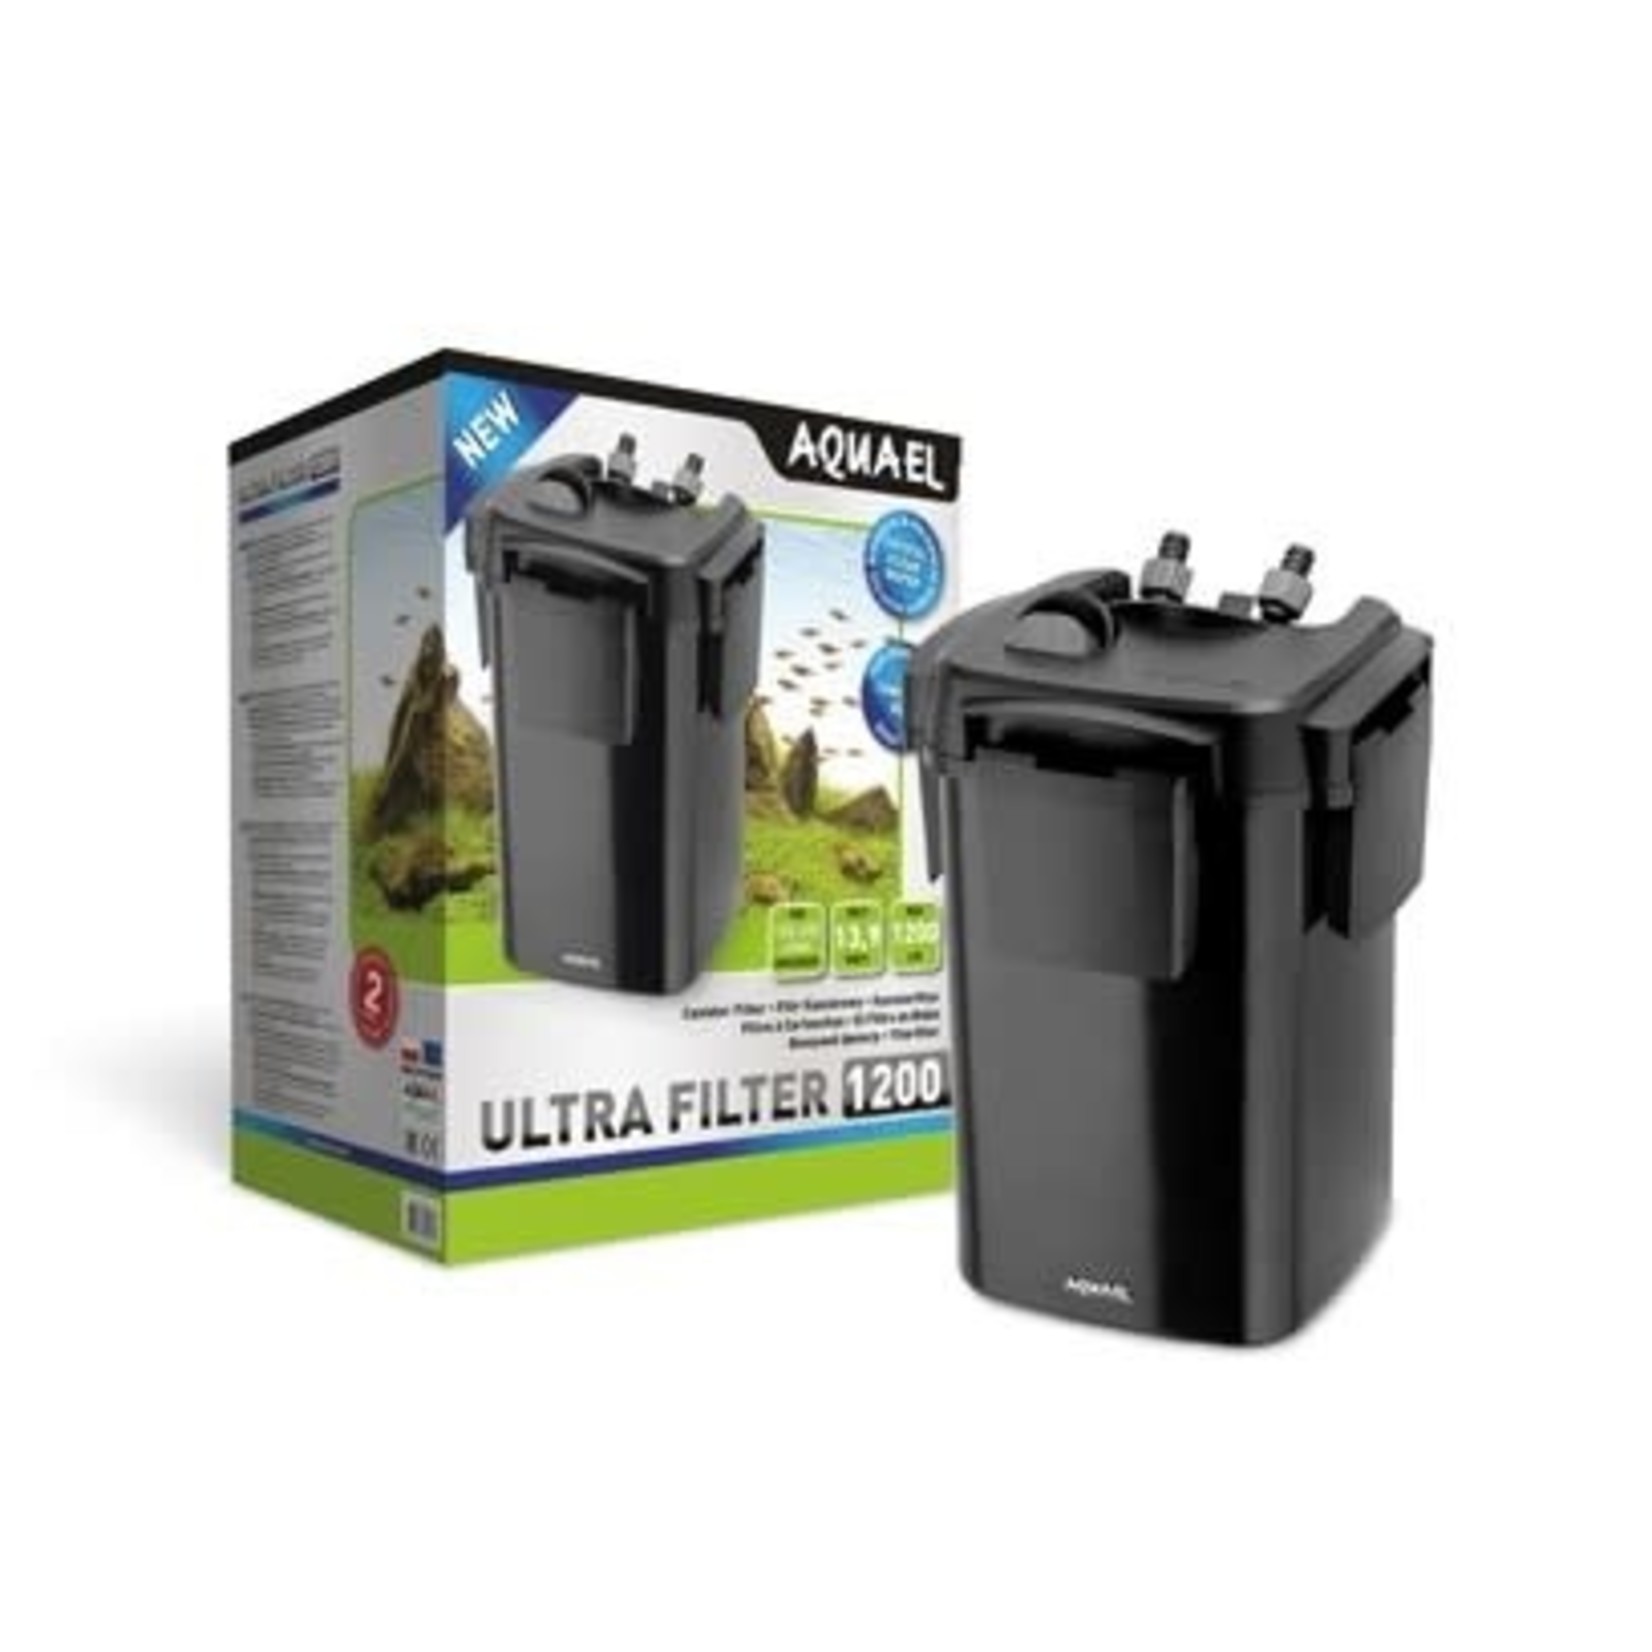 AquaEl Filtre Ultra 900 - 1200 - 1400